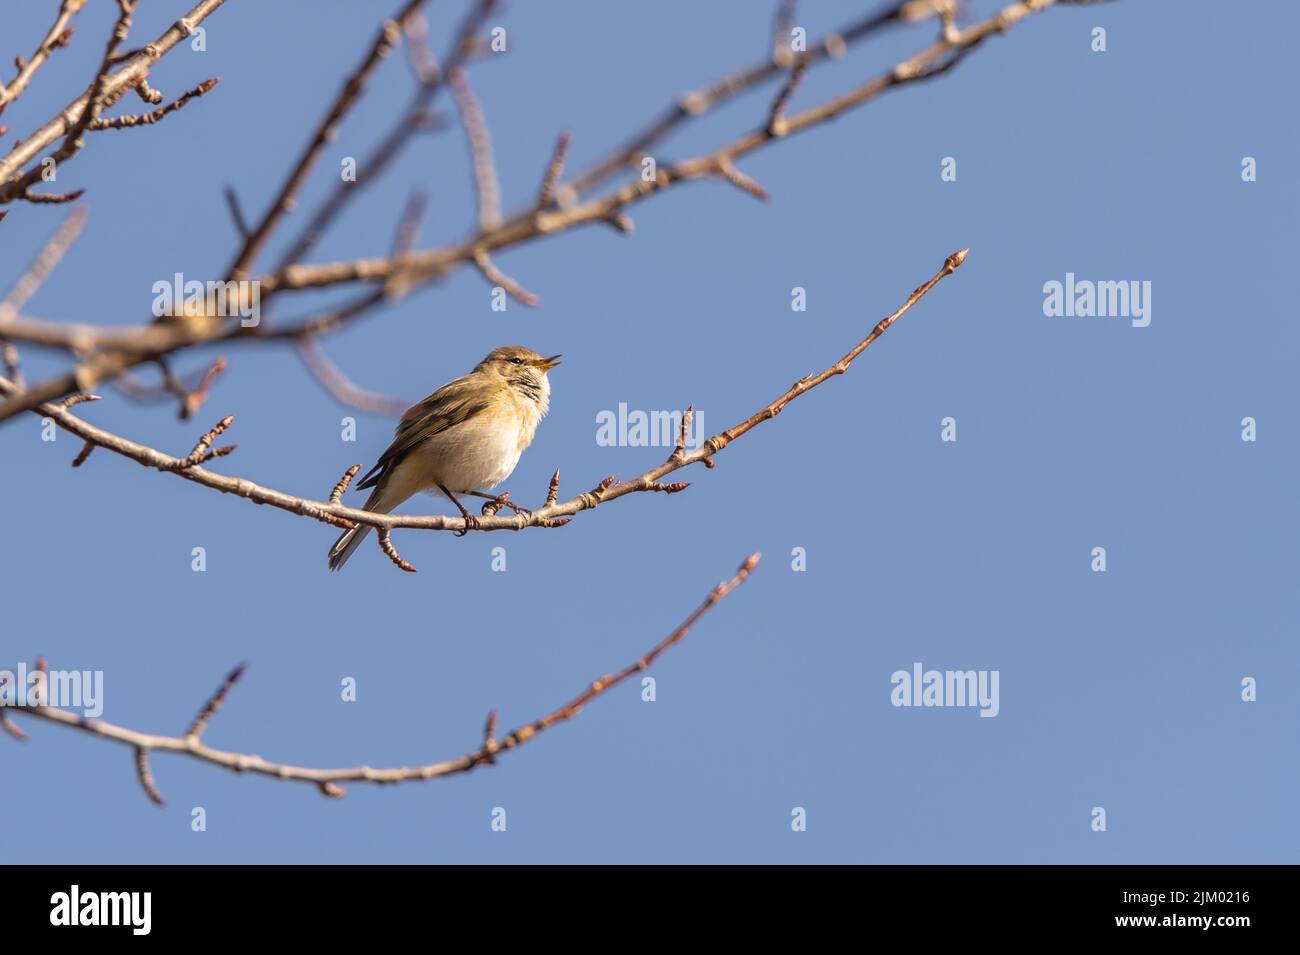 chiffchaff comune, Phylloscopus collybita, seduto su un ramo, canta un rametto. Fotografia di uccelli scattata in Svezia nel mese di aprile. Sfondo cielo blu. Foto Stock